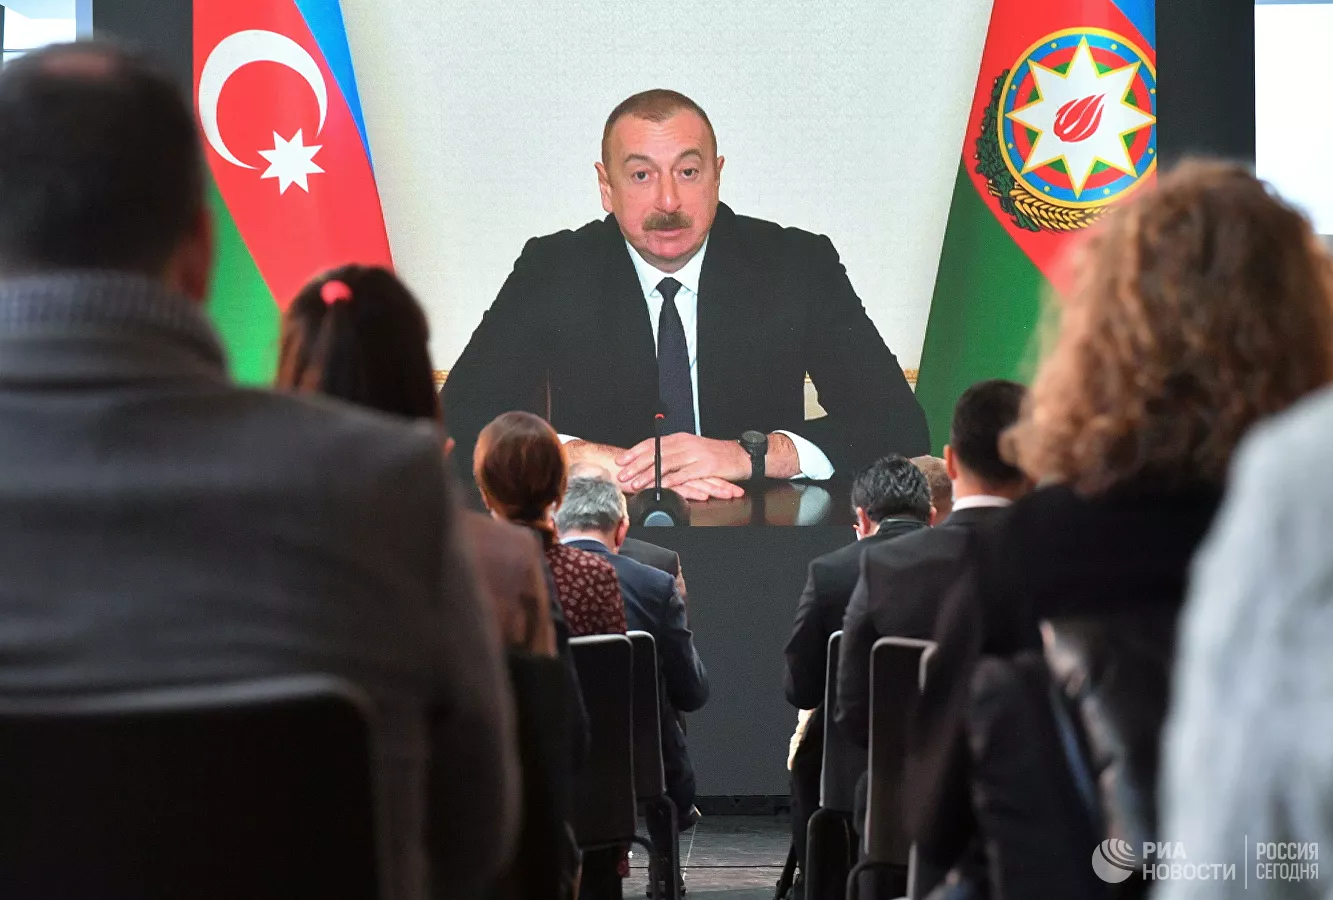 Алиев заявил, что в Карабахе не применяли "Искандеры"